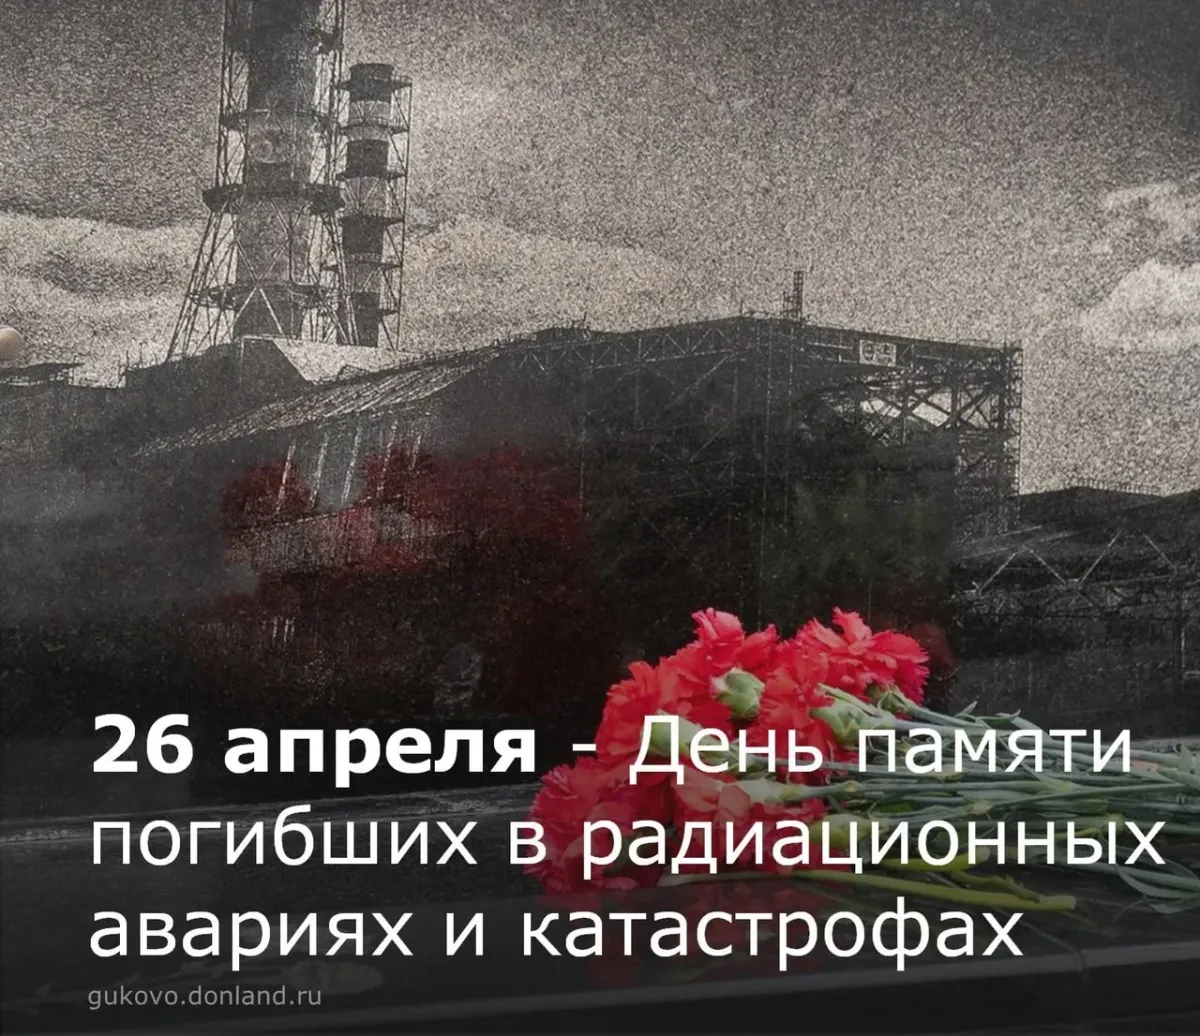 26 апреля день трагедии. 26 Апреля день памяти погибших в радиационных авариях и катастрофах. 26 Апреля 1986 года. 1986 26 Апреля катастрофа. День памяти Чернобыльской трагедии.